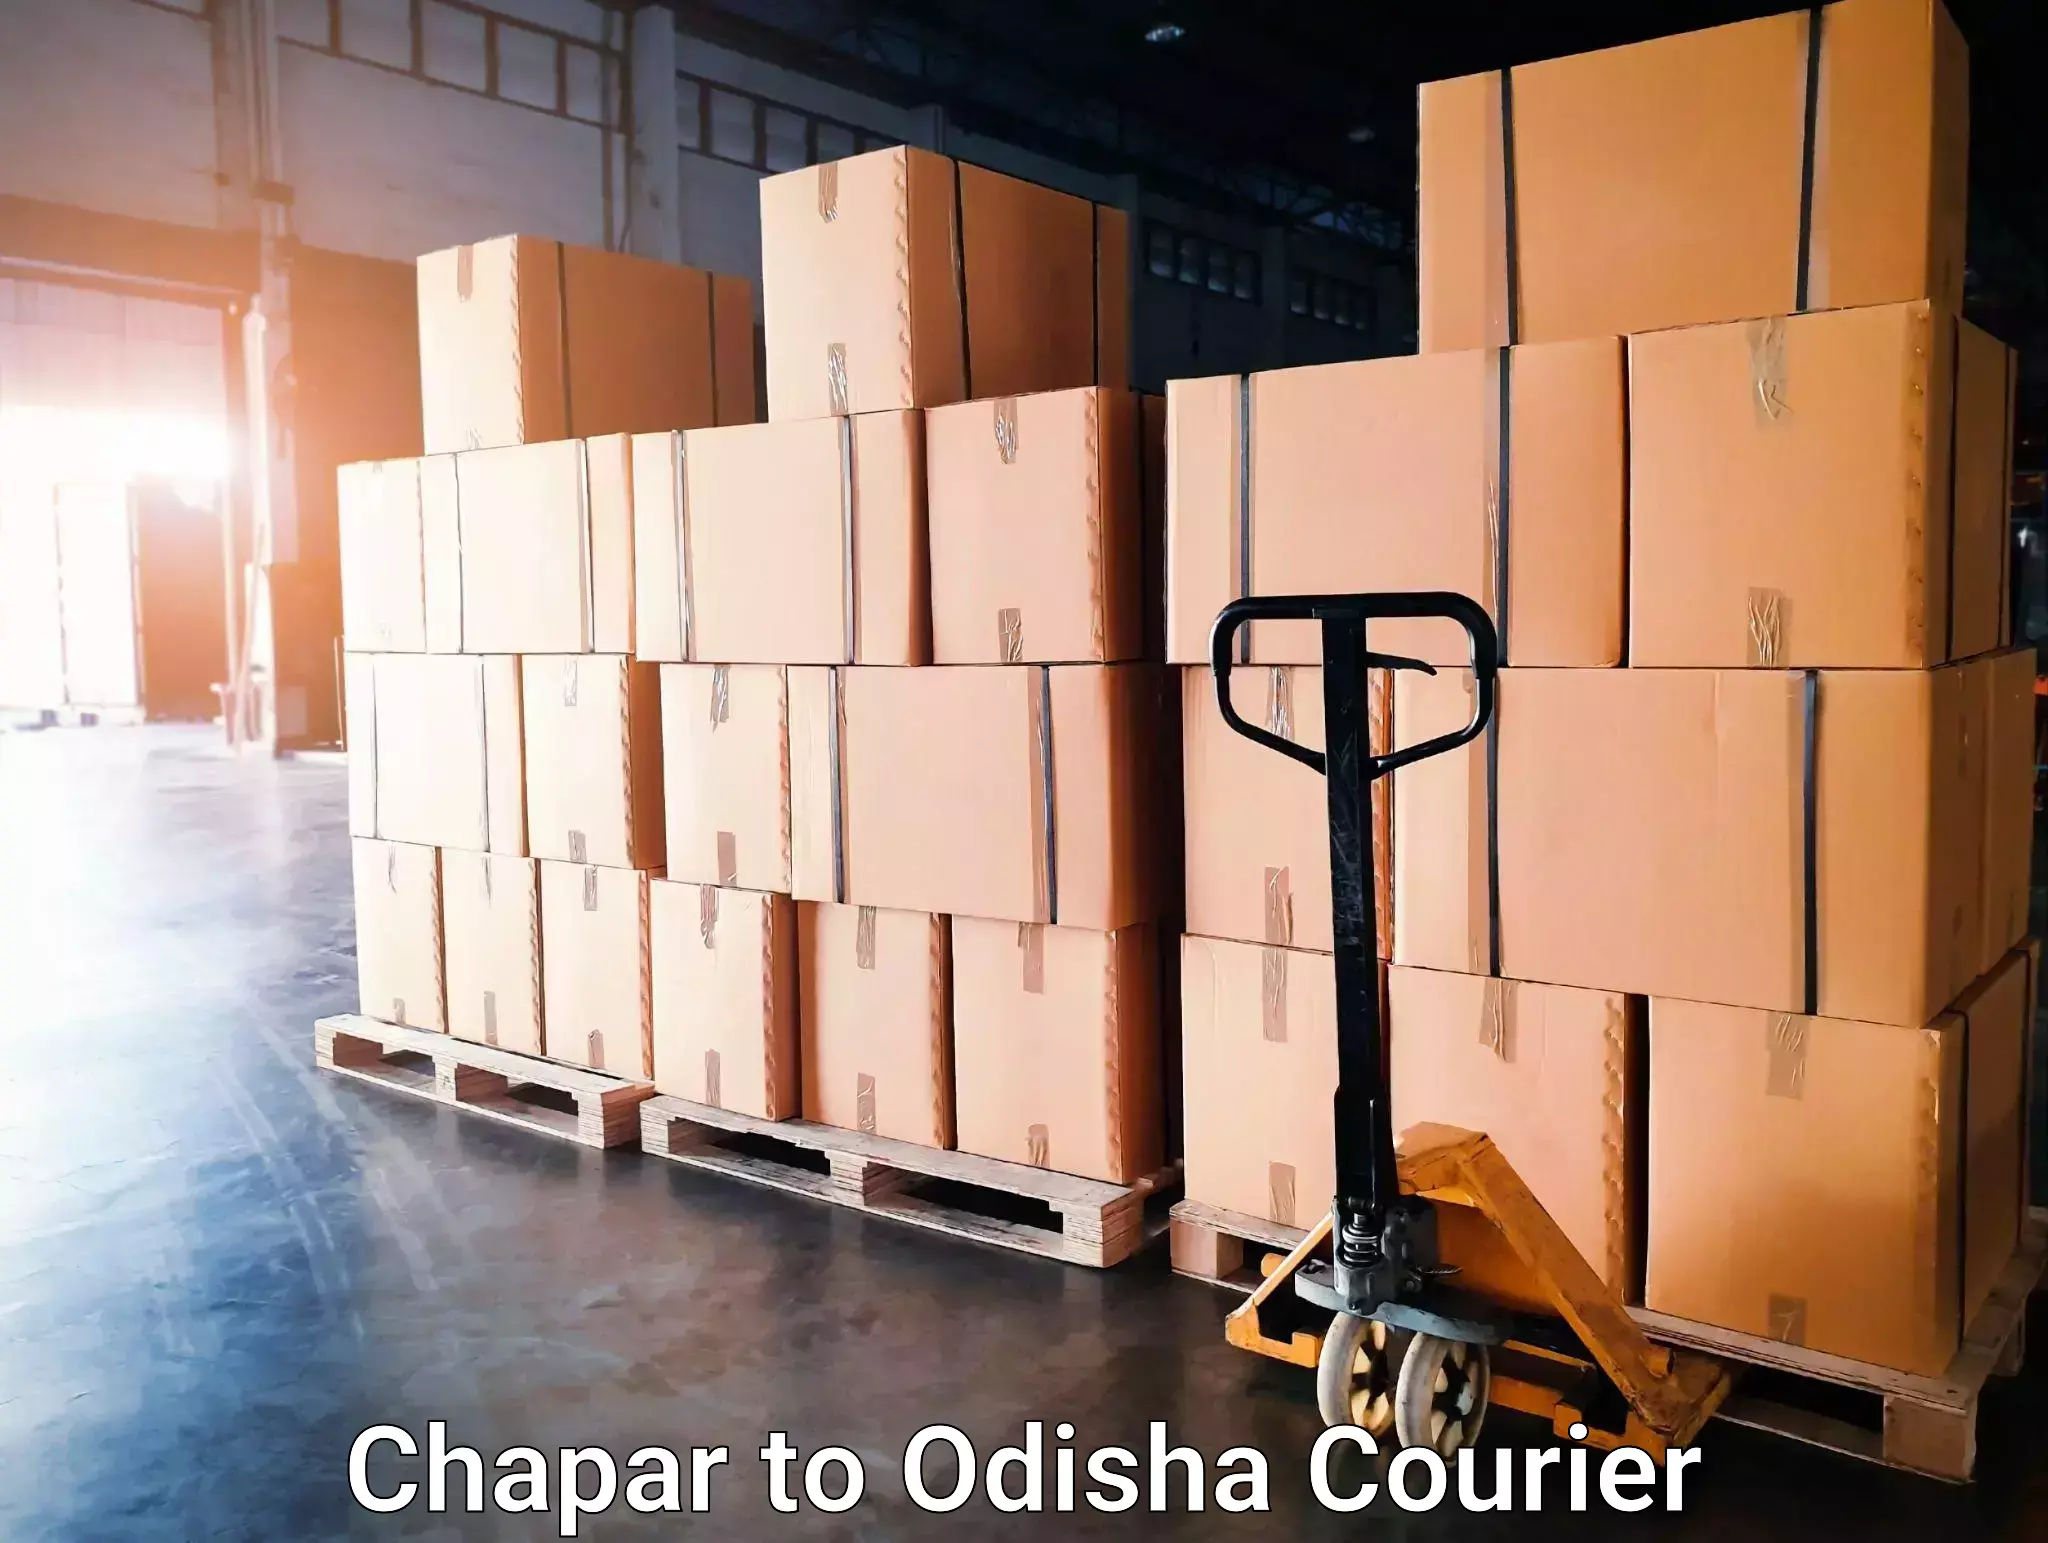 24/7 courier service Chapar to Talcher